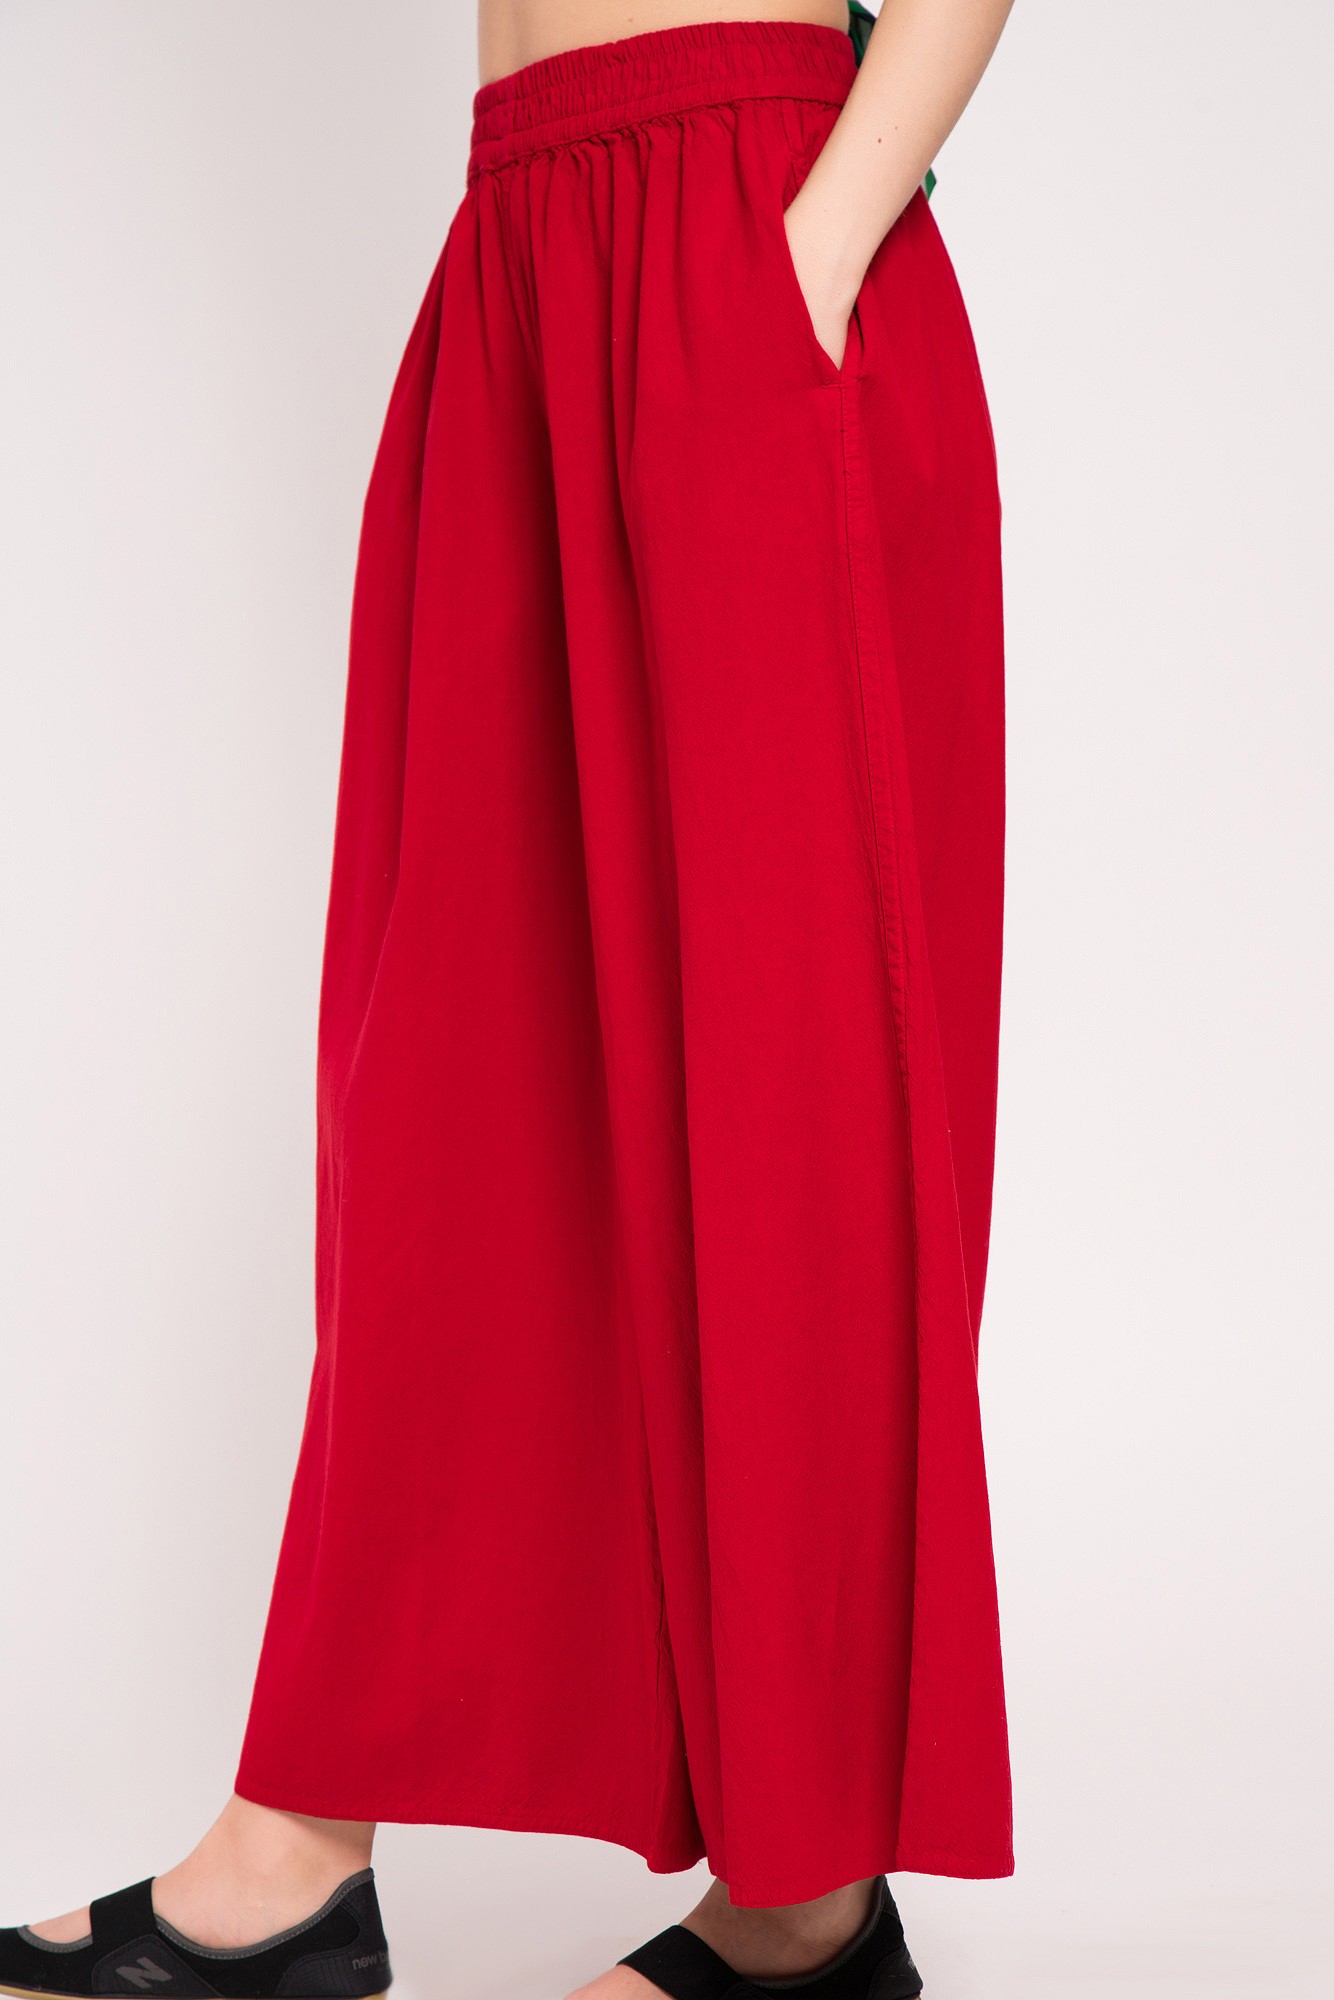 Pantaloni Culotte rosii cu buzunare